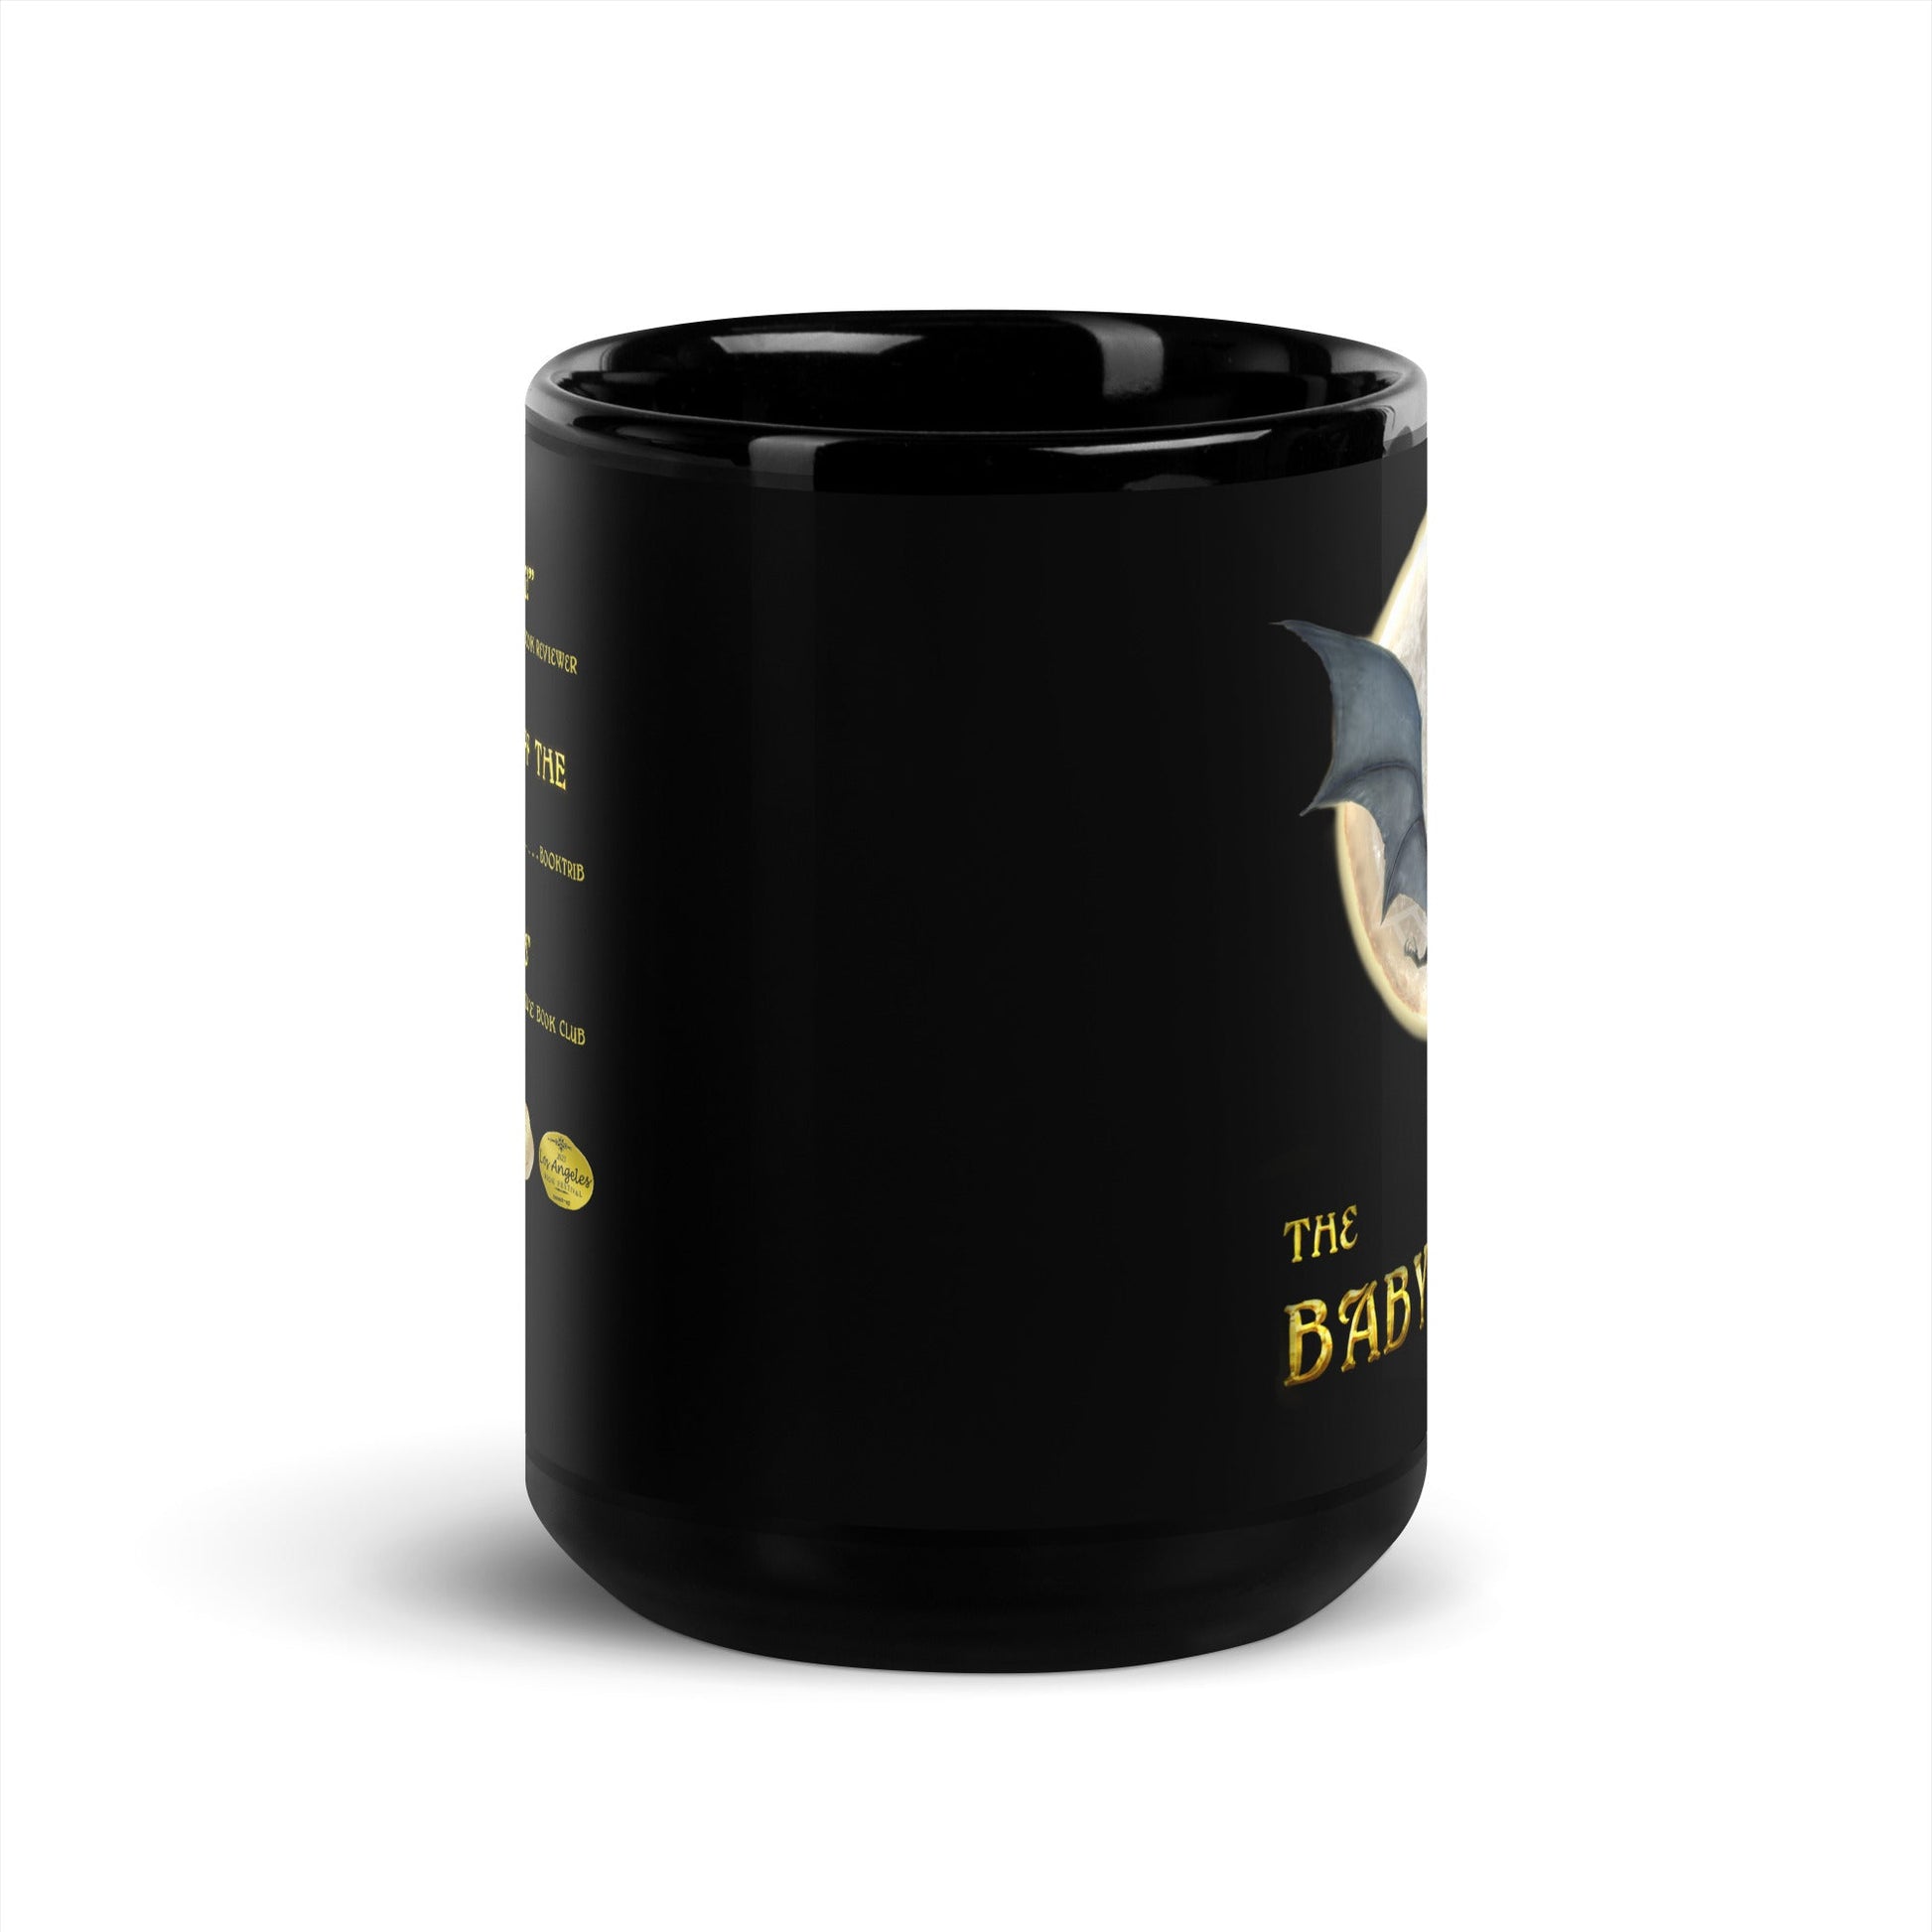 The Baby-Eater Awards Black Glossy Mug - Spectral Ink Shop - Mug -8300674_9323